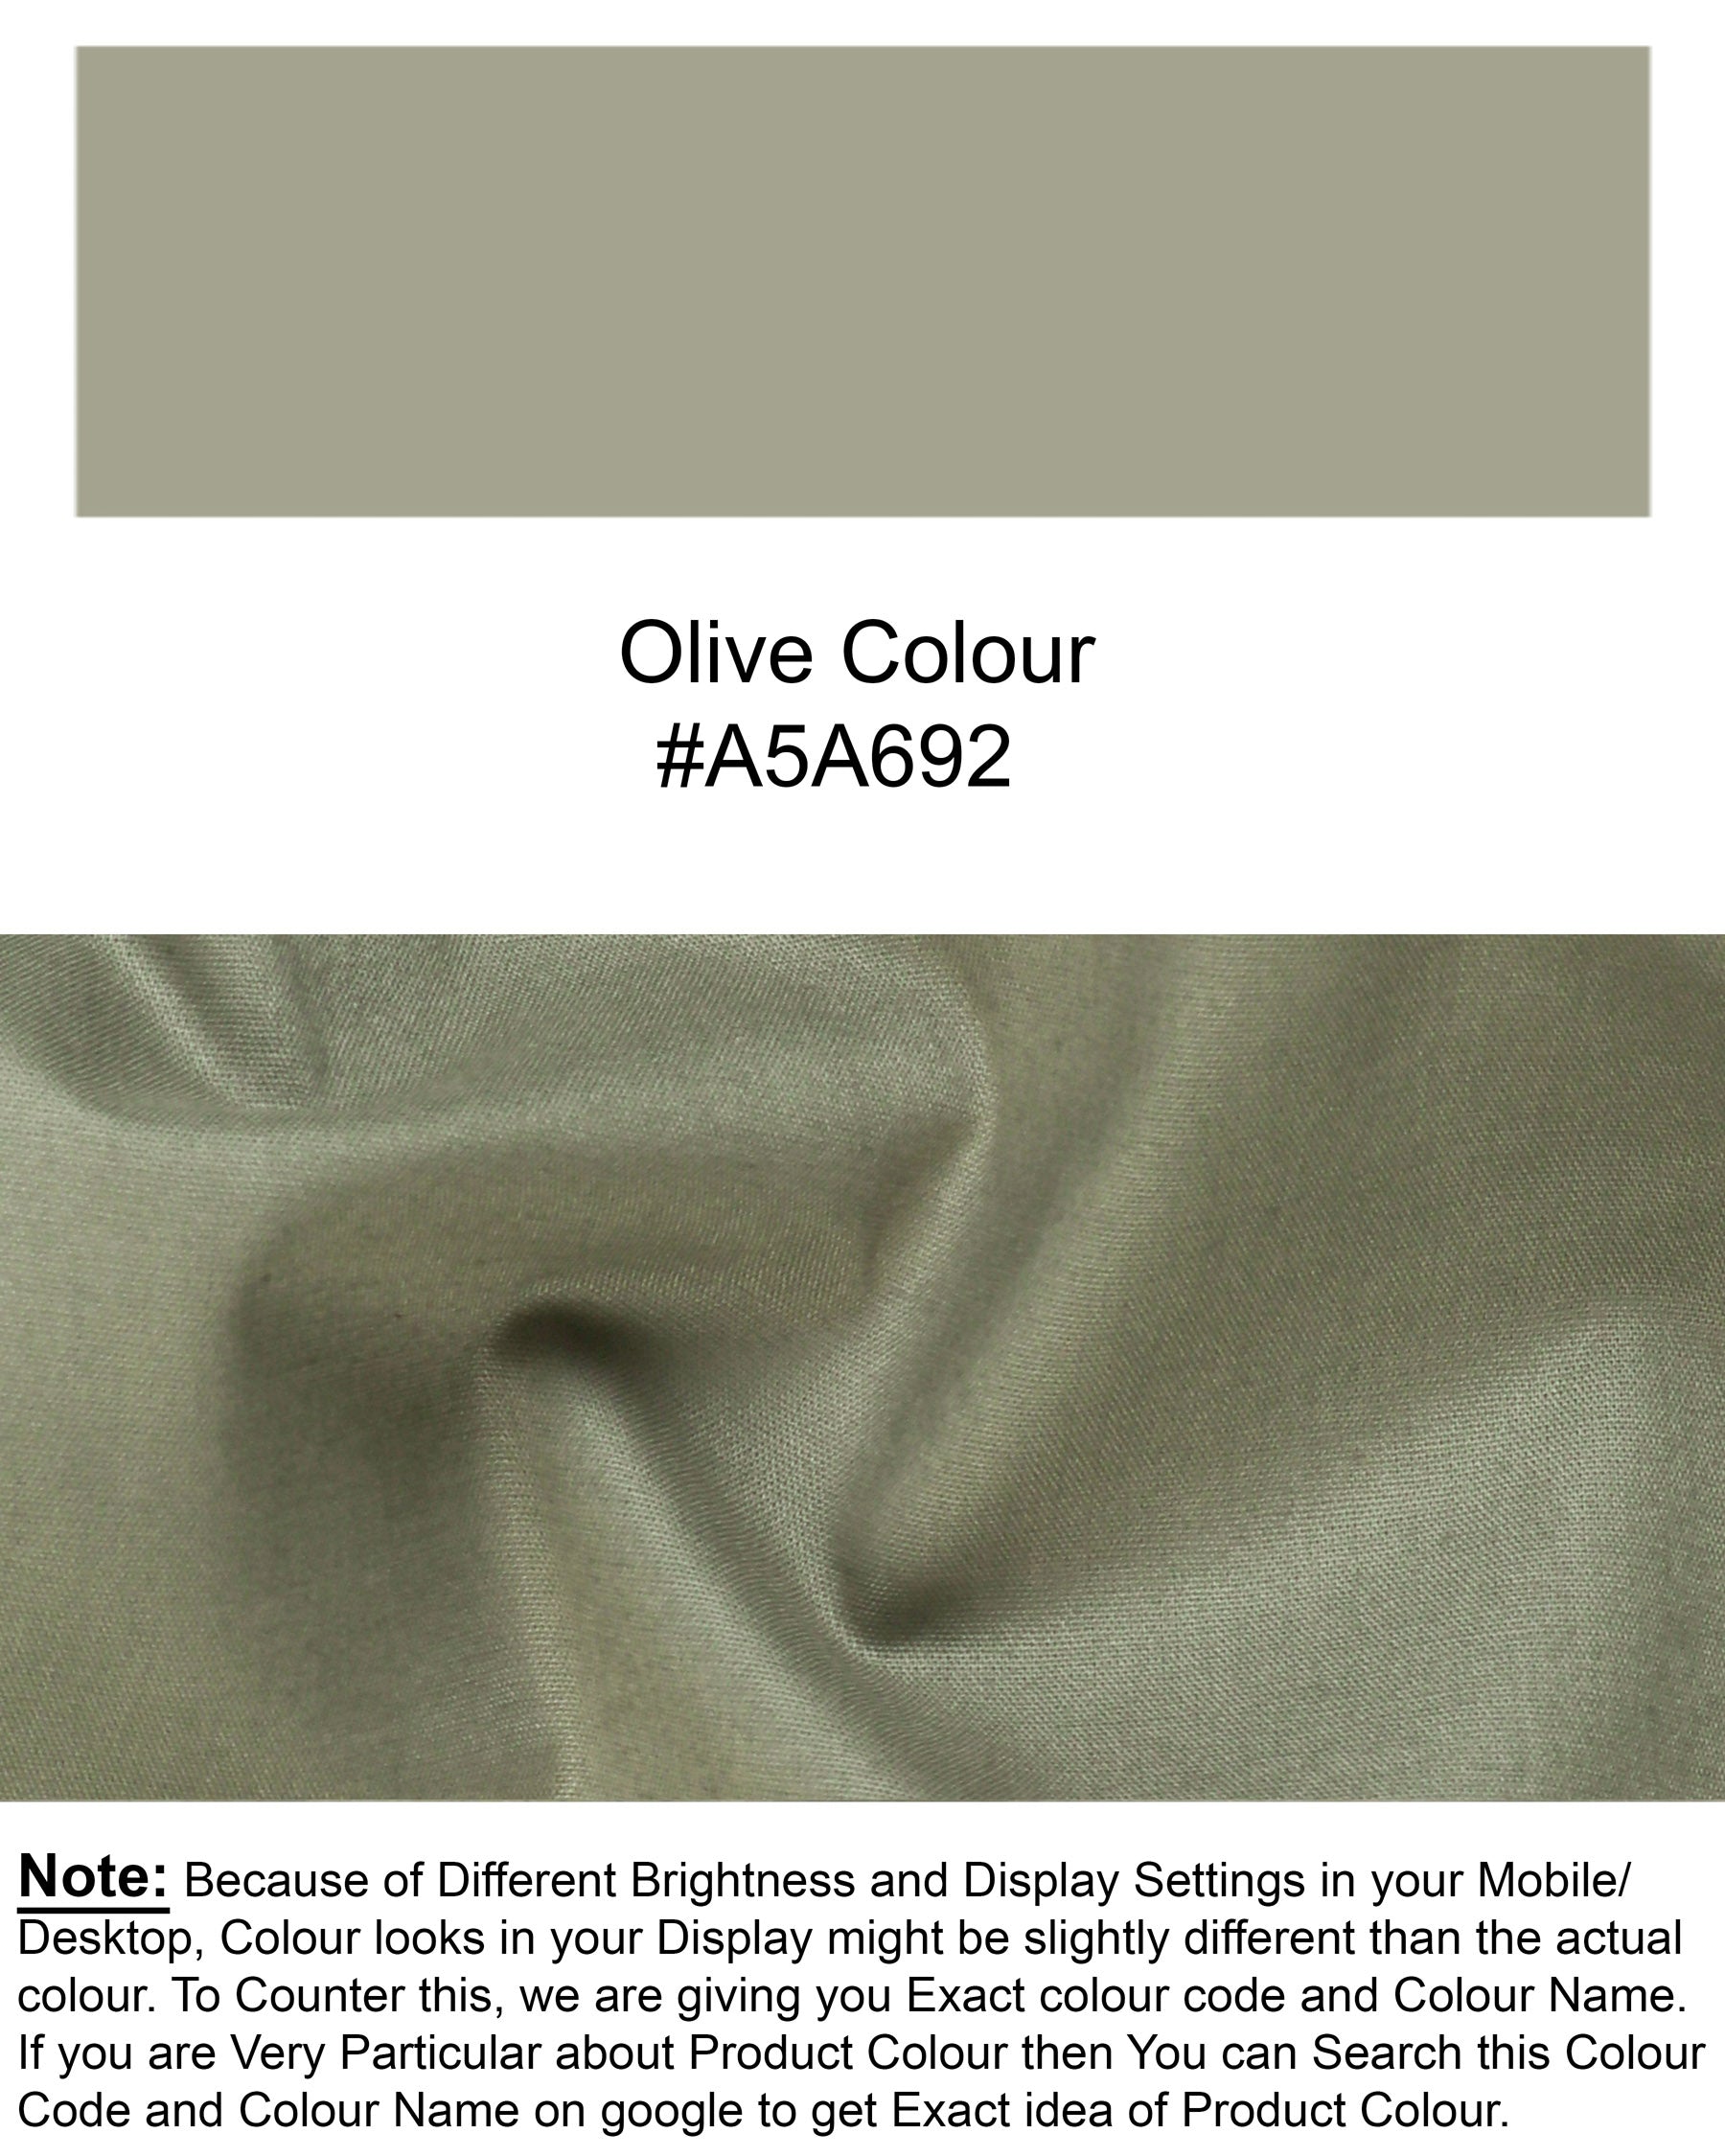 Gray Olive Premium Cotton Shorts SR78-34, SR78-44, SR78-32, SR78-30, SR78-36, SR78-38, SR78-40, SR78-42, SR78-28